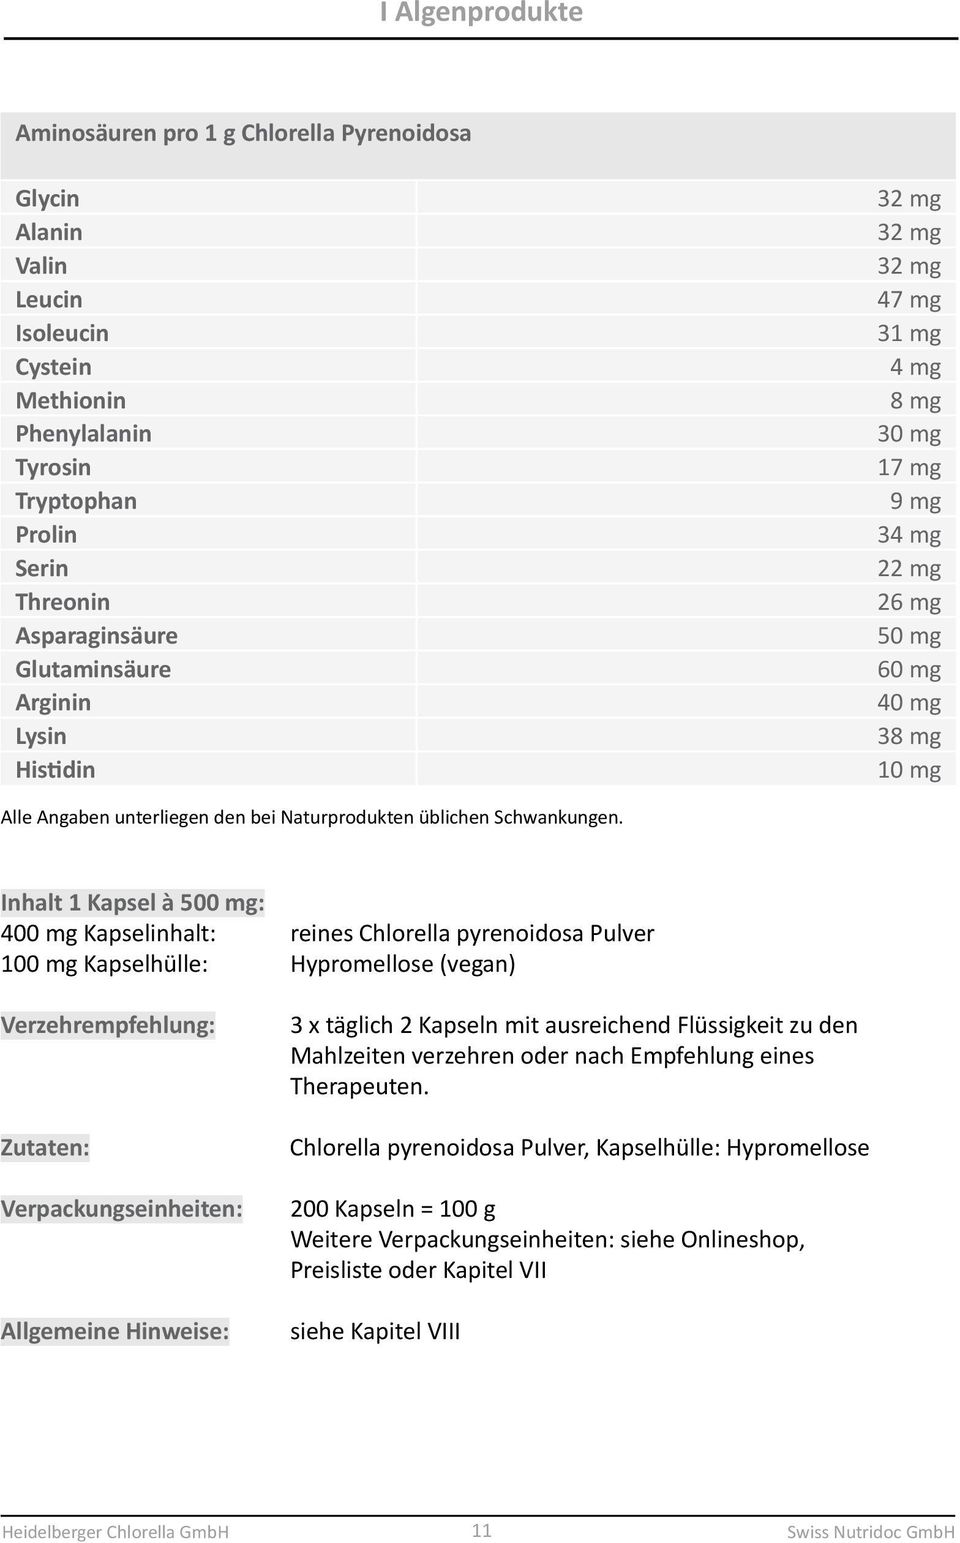 Inhalt 1 Kapsel à 500 mg: 400 mg Kapselinhalt: reines Chlorella pyrenoidosa Pulver 100 mg Kapselhülle: Hypromellose (vegan) Verpackungseinheiten: 3 x täglich 2 Kapseln mit ausreichend Flüssigkeit zu